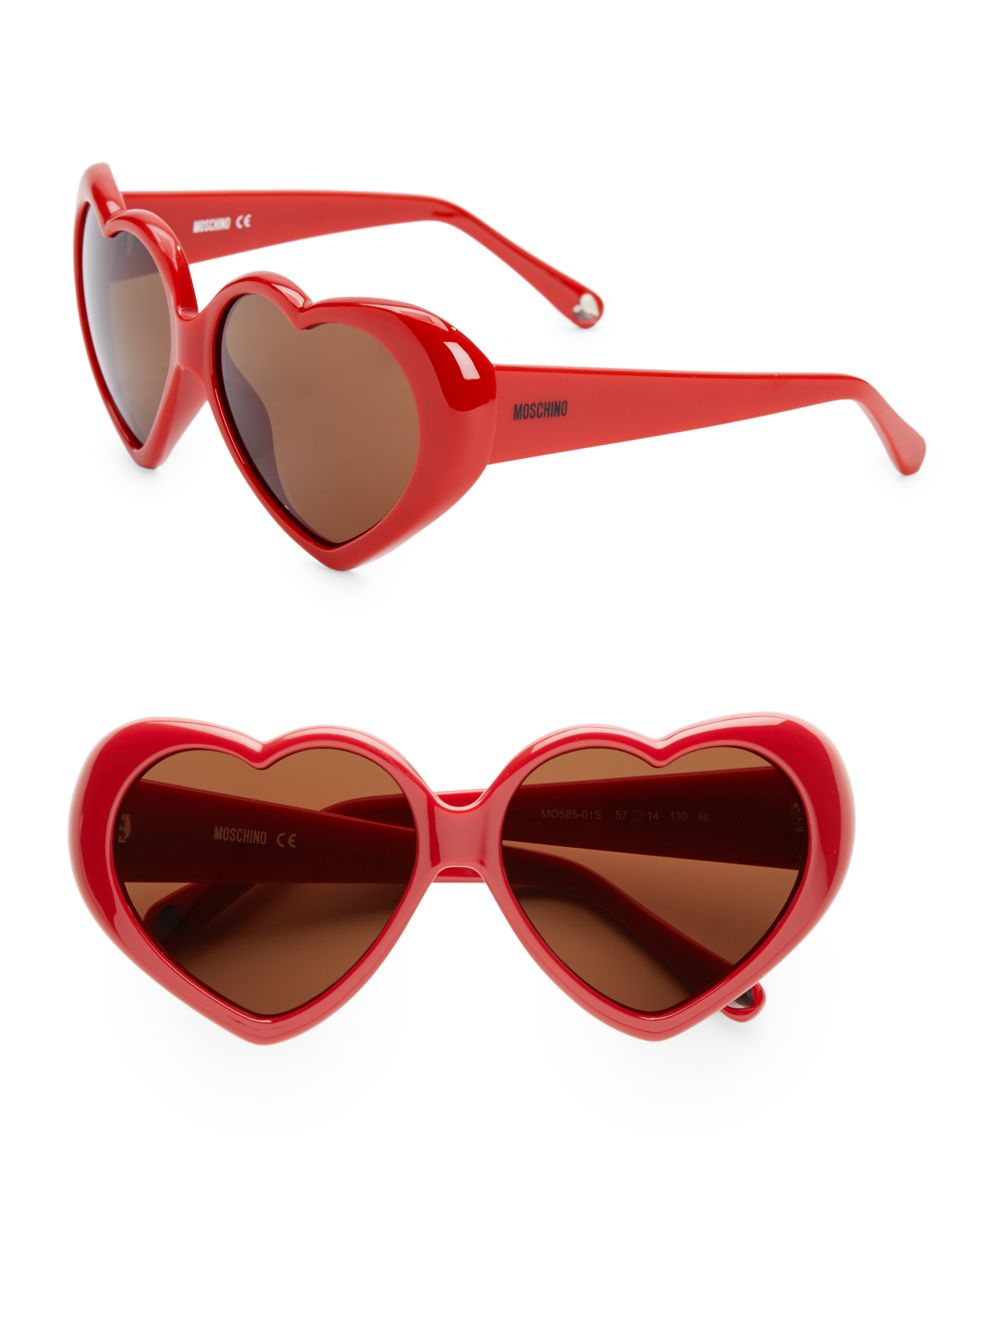 Moschino Retro Heart Sunglasses in Red 